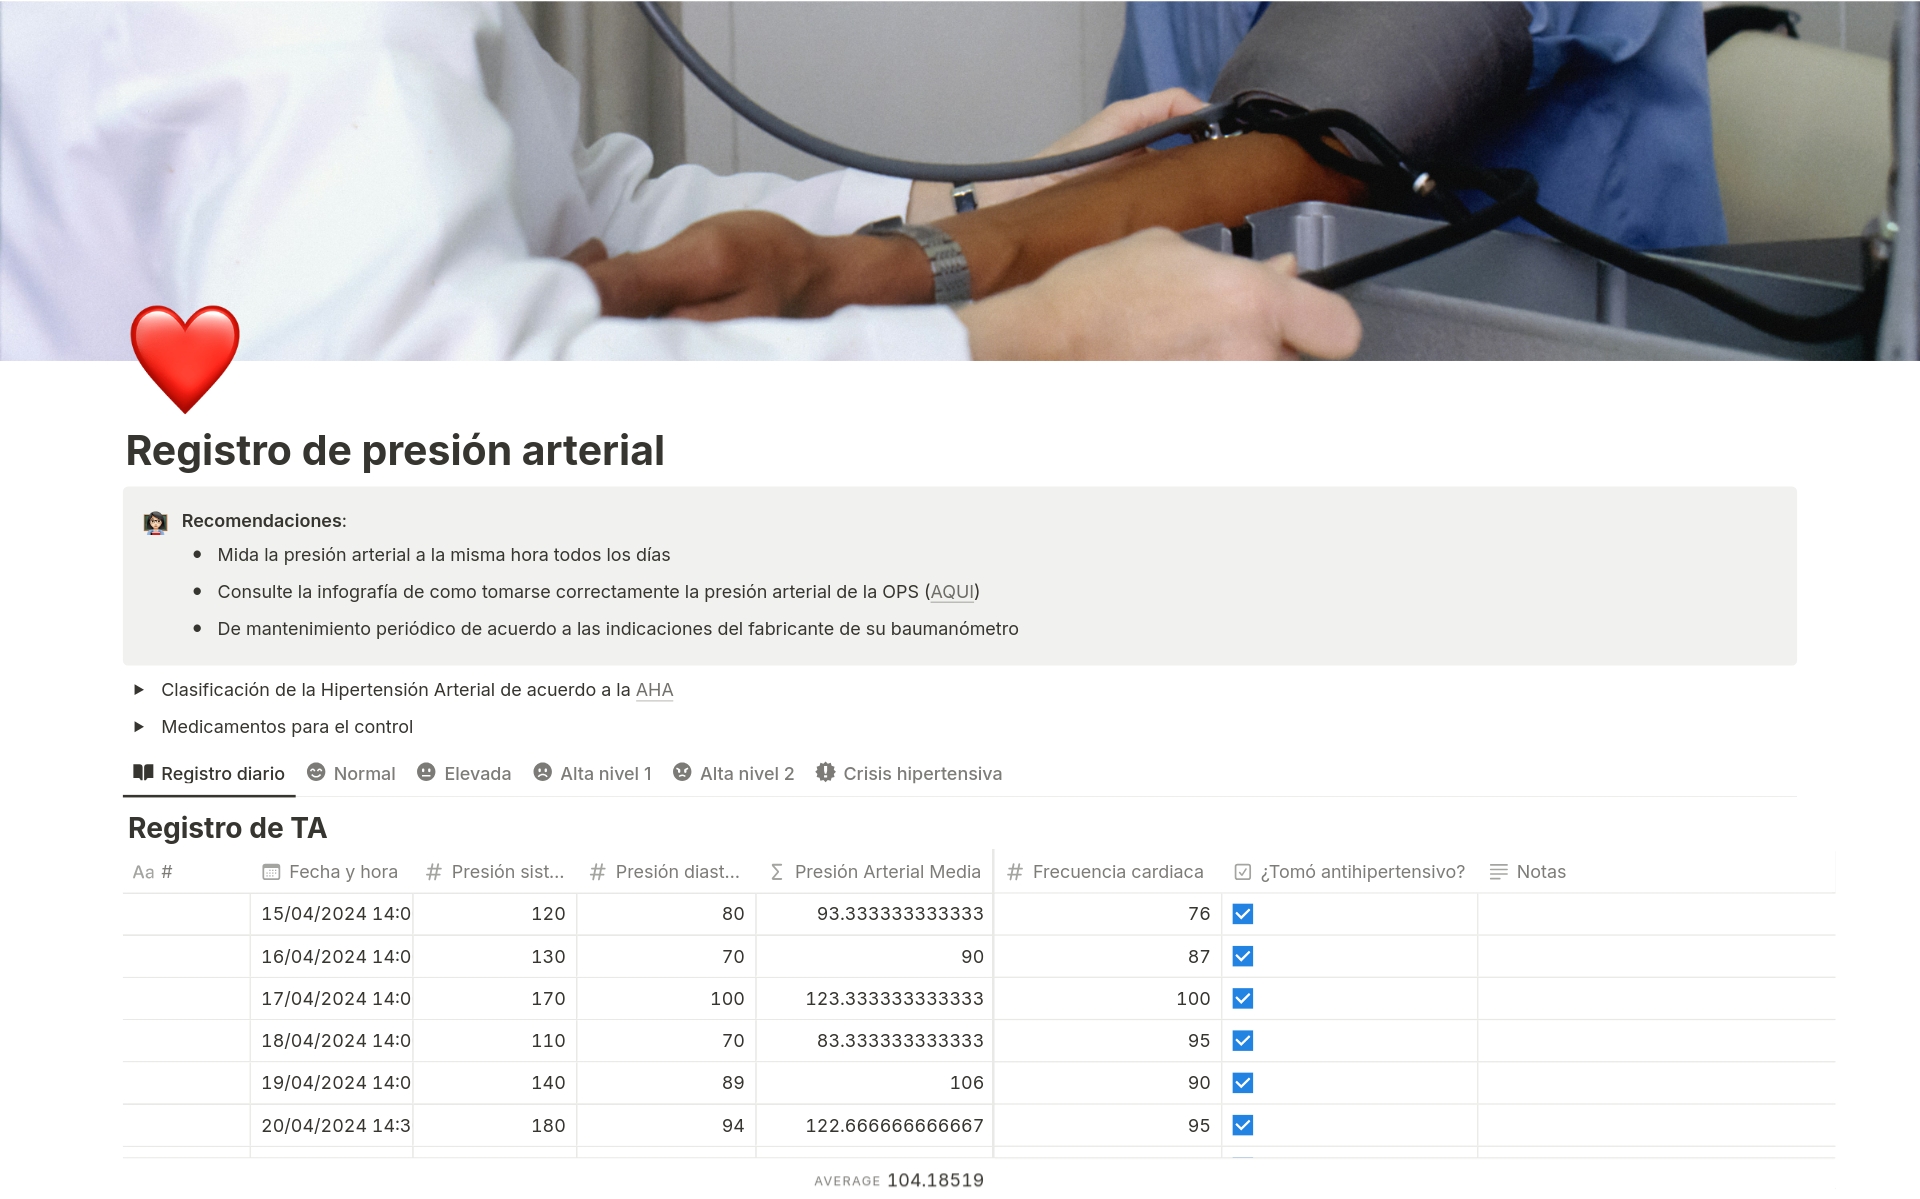 A template preview for Registro de presión arterial